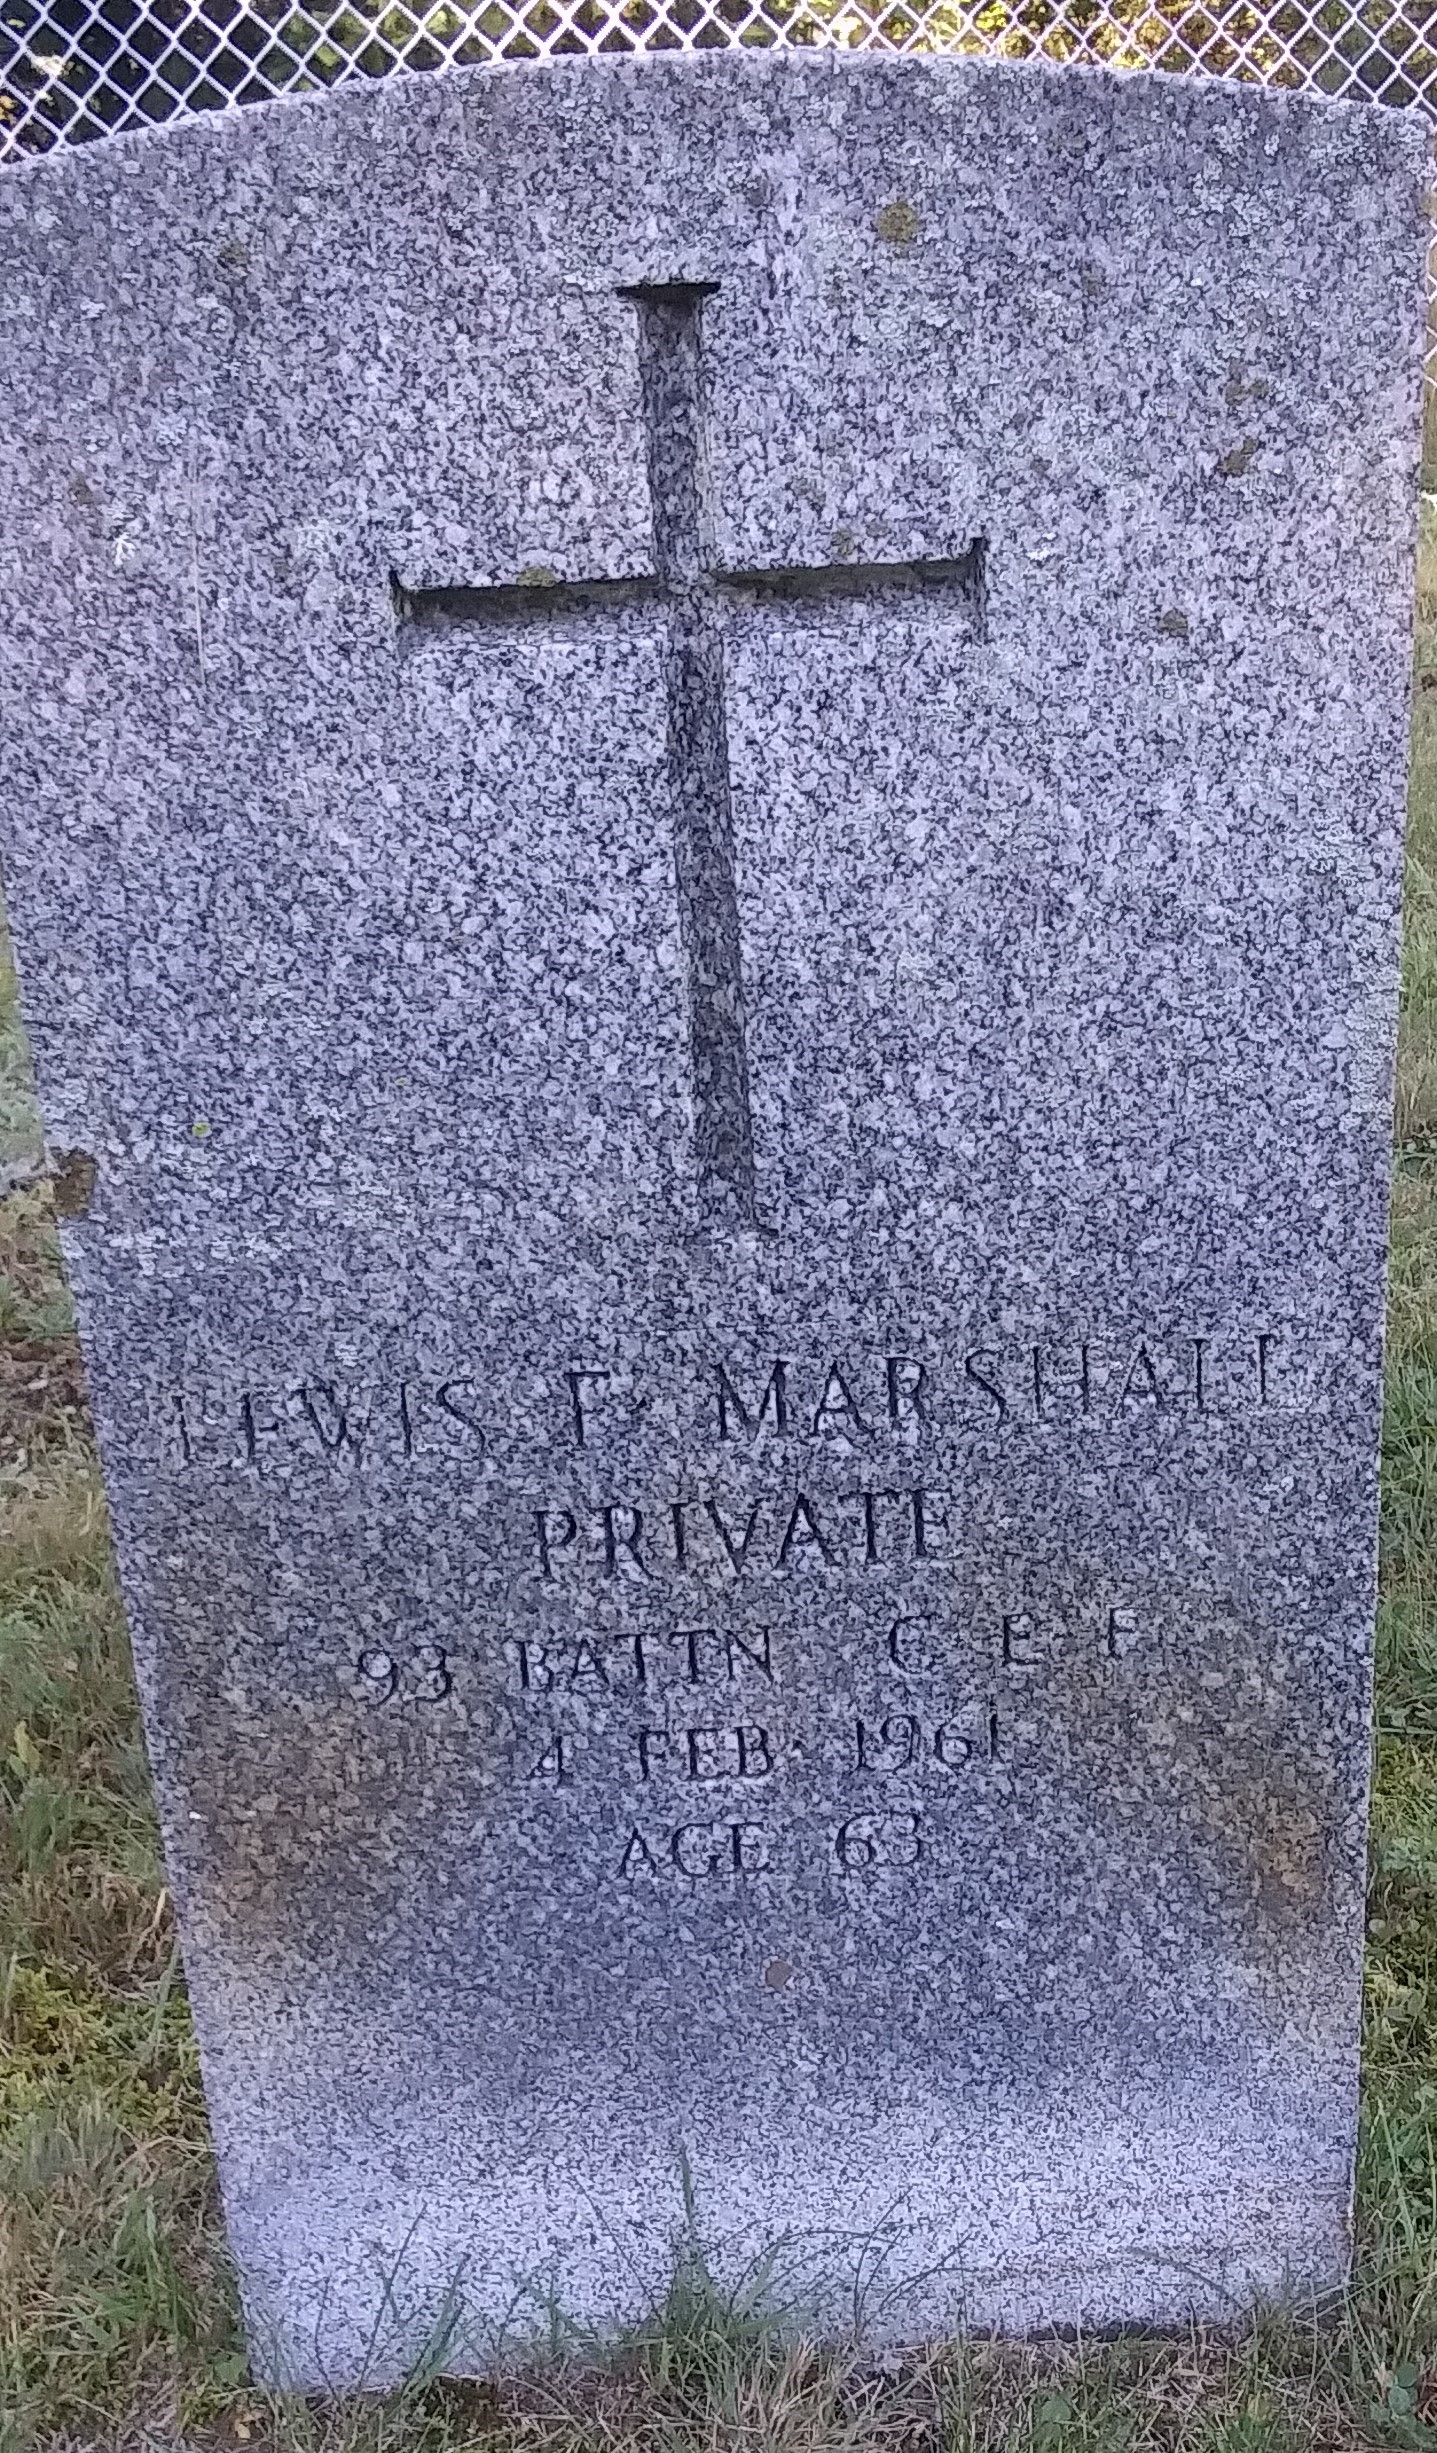 Lewis Marshall